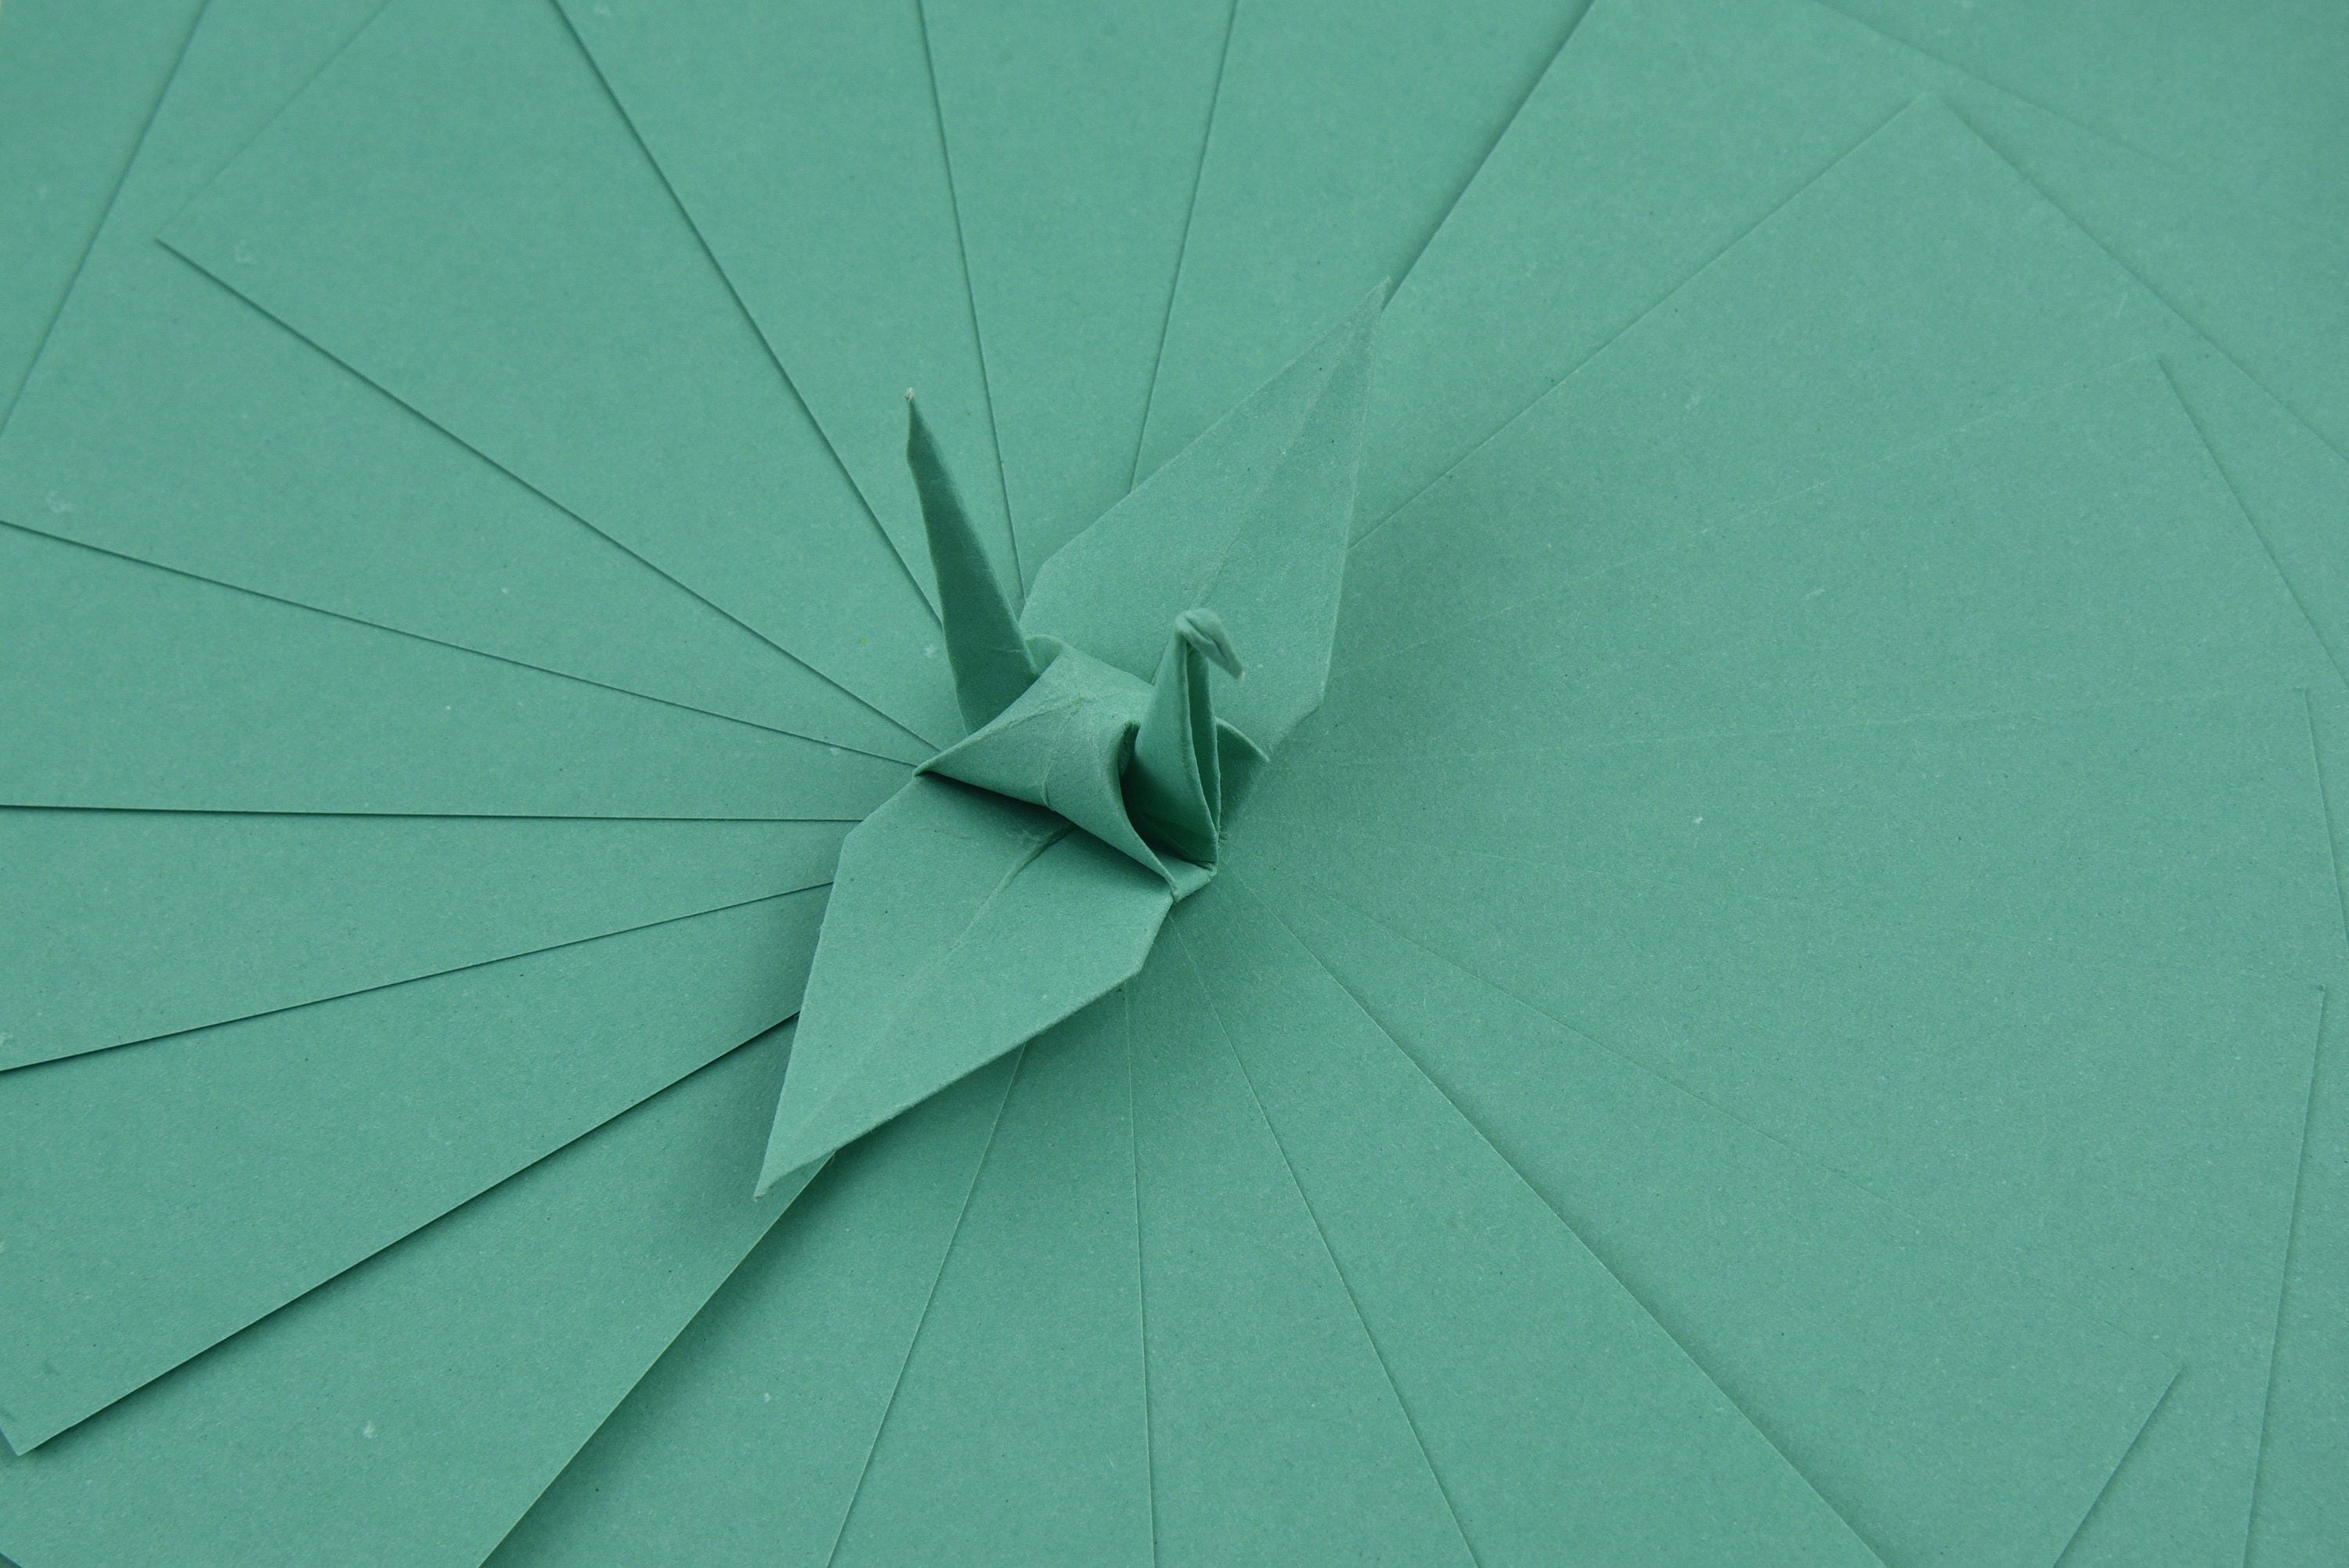 100 Hojas de Papel Origami - 6x6 pulgadas - Paquete de Papel Cuadrado para Plegar, Grullas de Origami y Decoración - S21